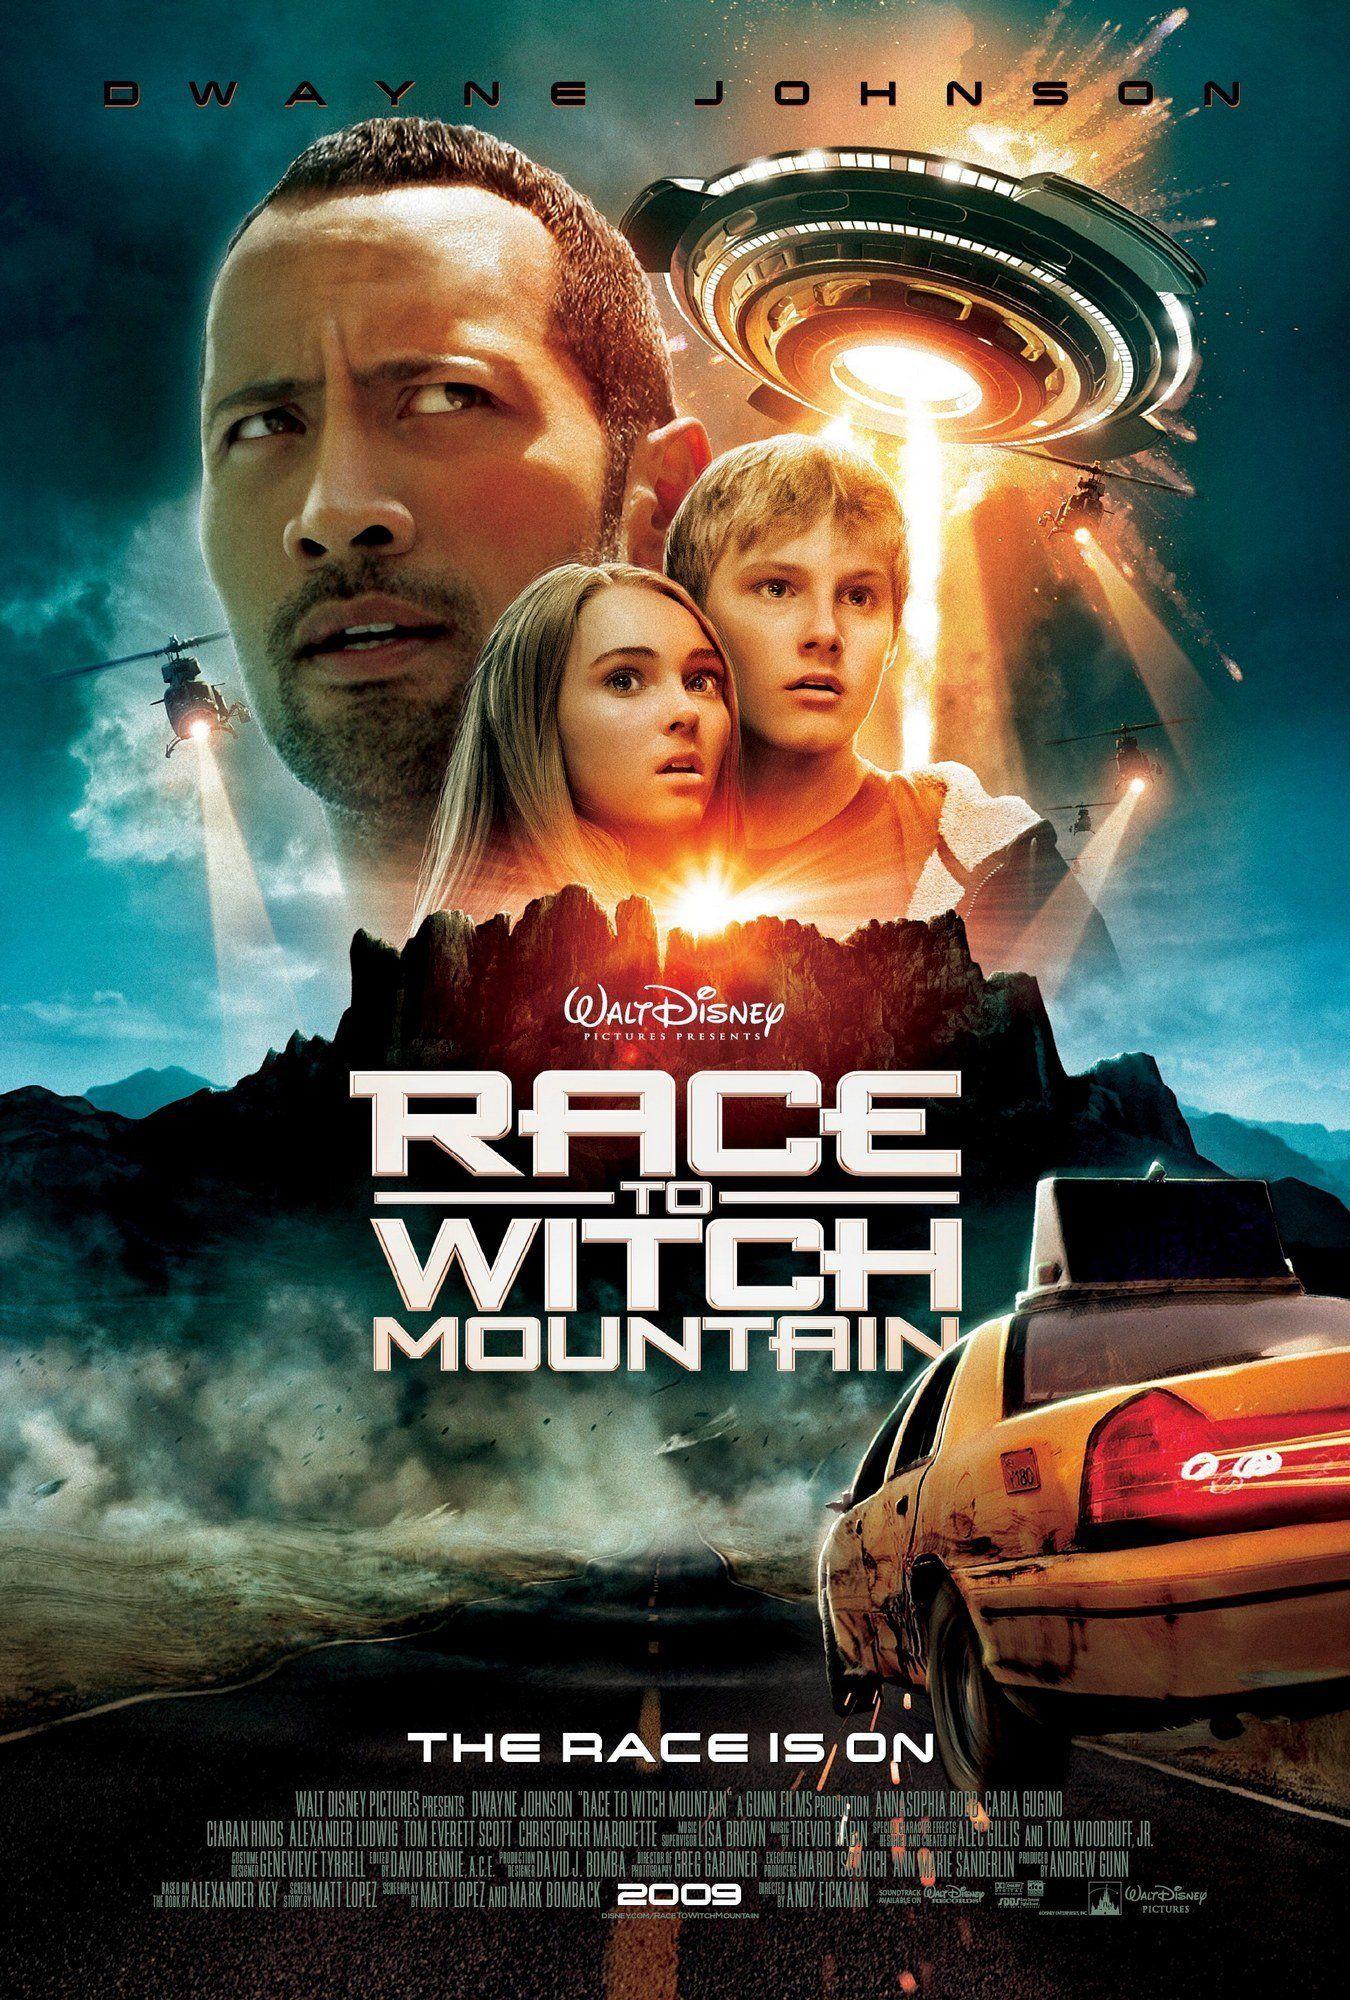 Race to Witch Mountain. Race to witch mountain, Disney